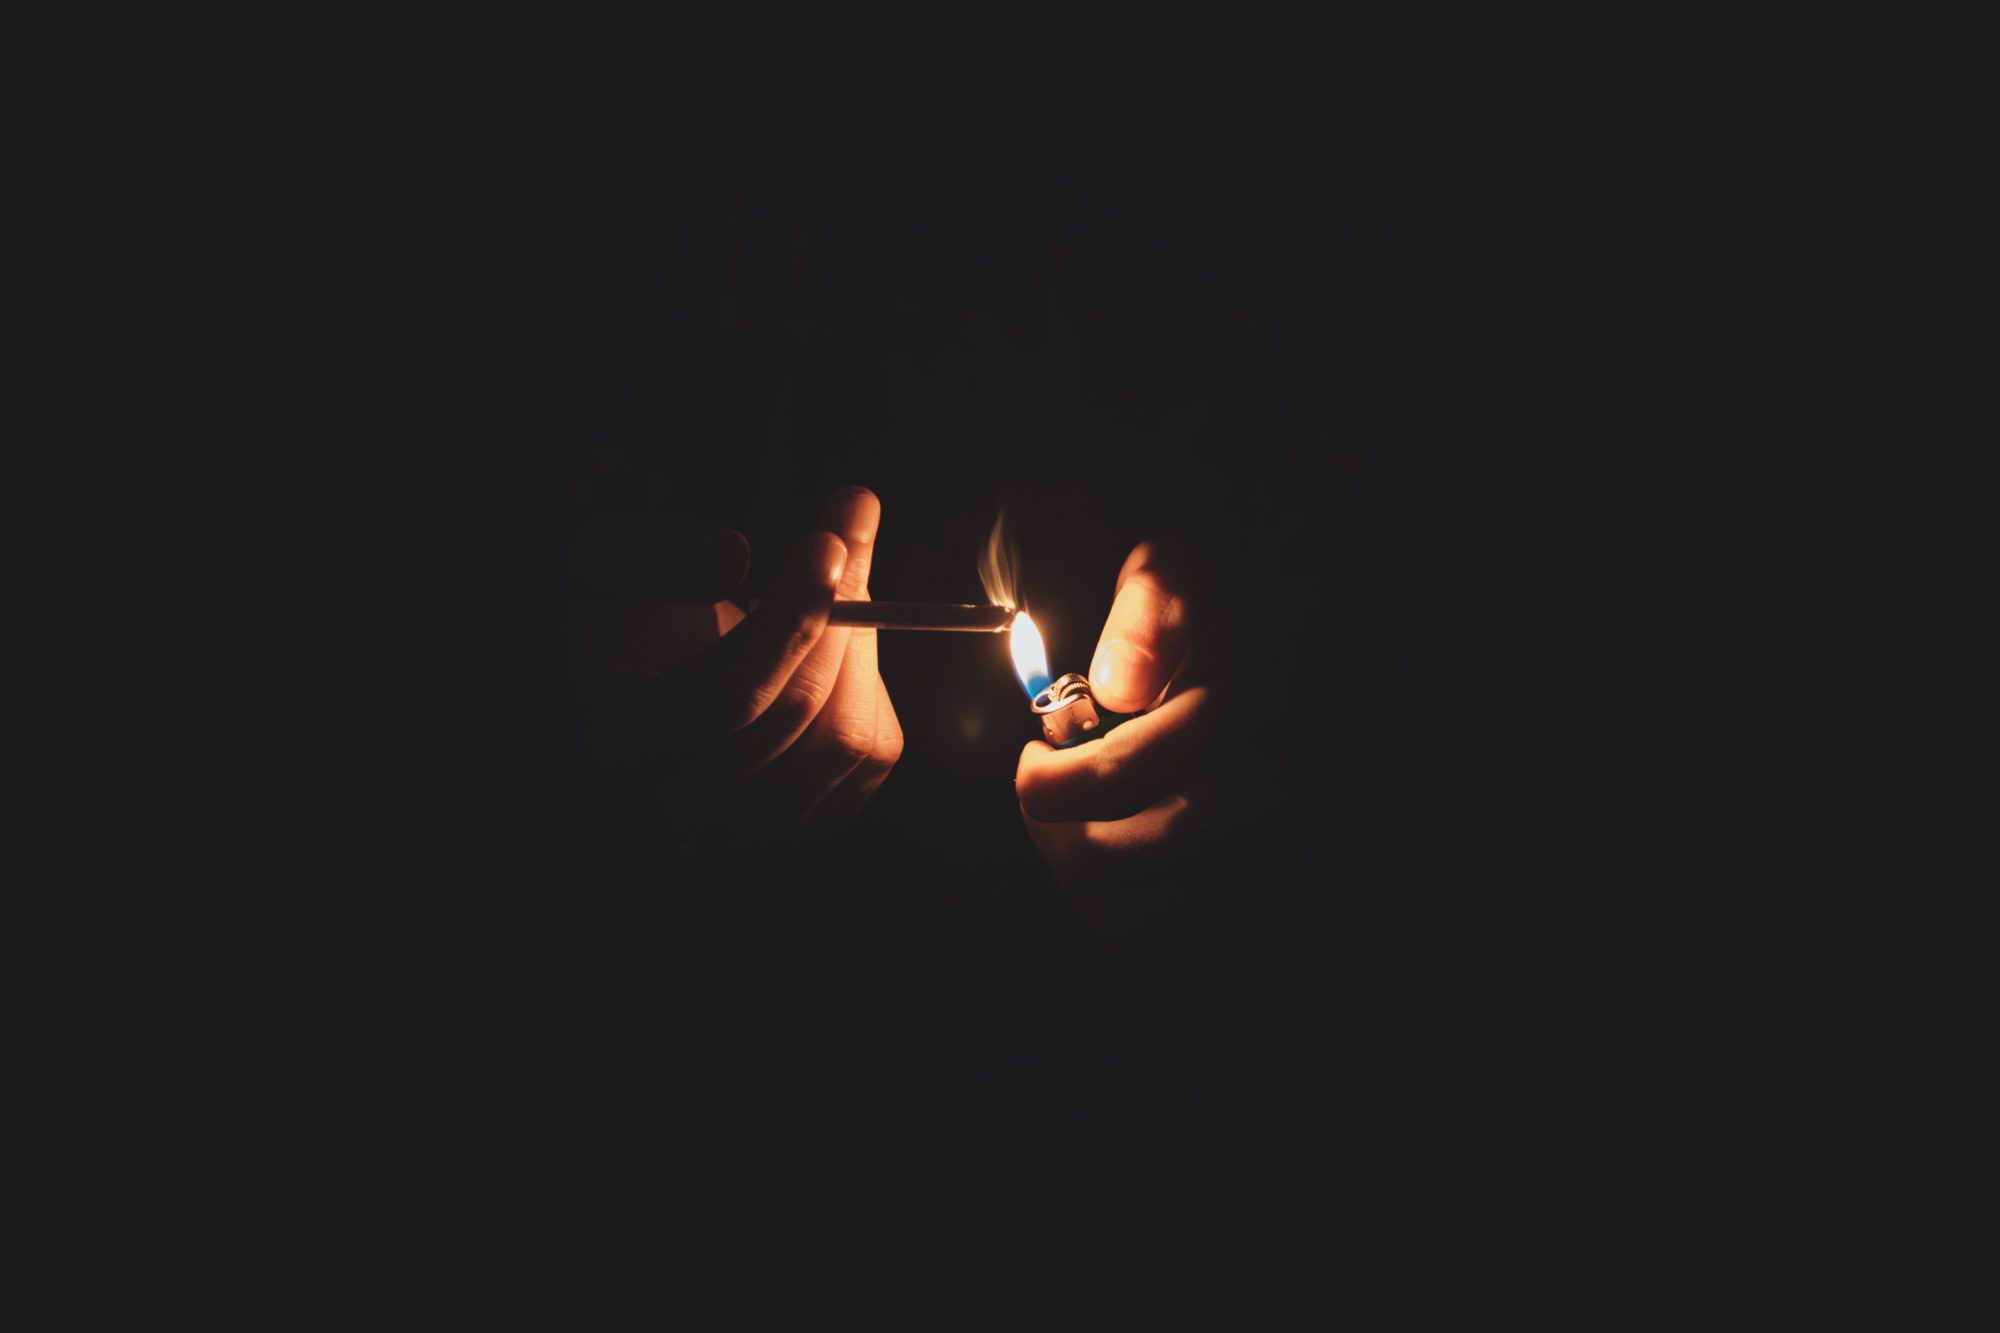 a person lights a cigarette in the dark